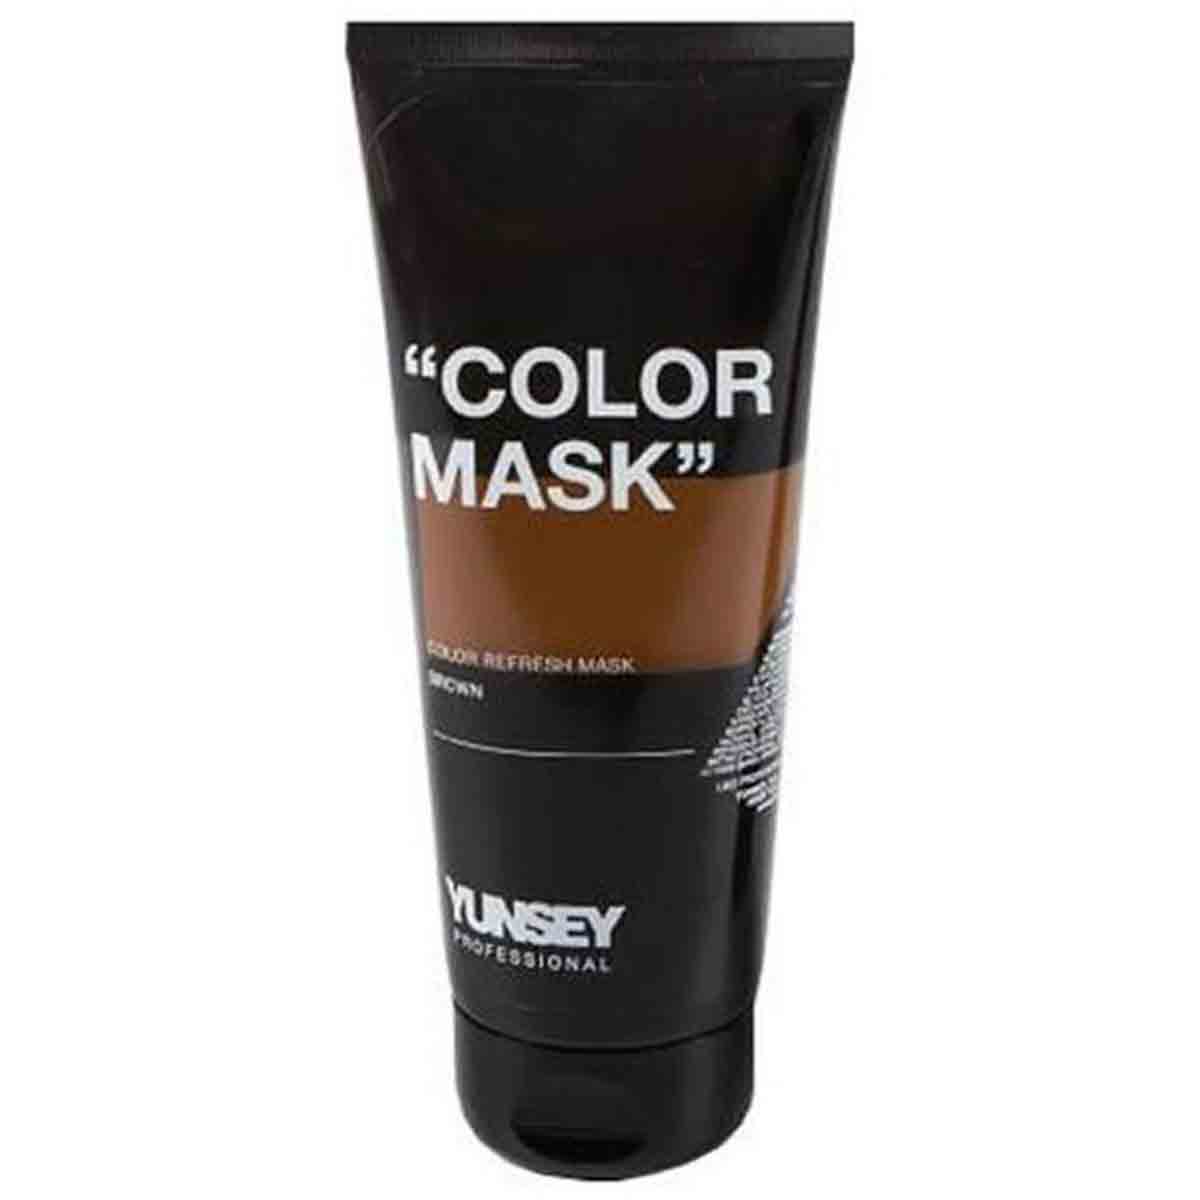 ماسک مو رنگساژ یانسی Yunsey رنگ قهوه ای حجم 200 میلی لیتر